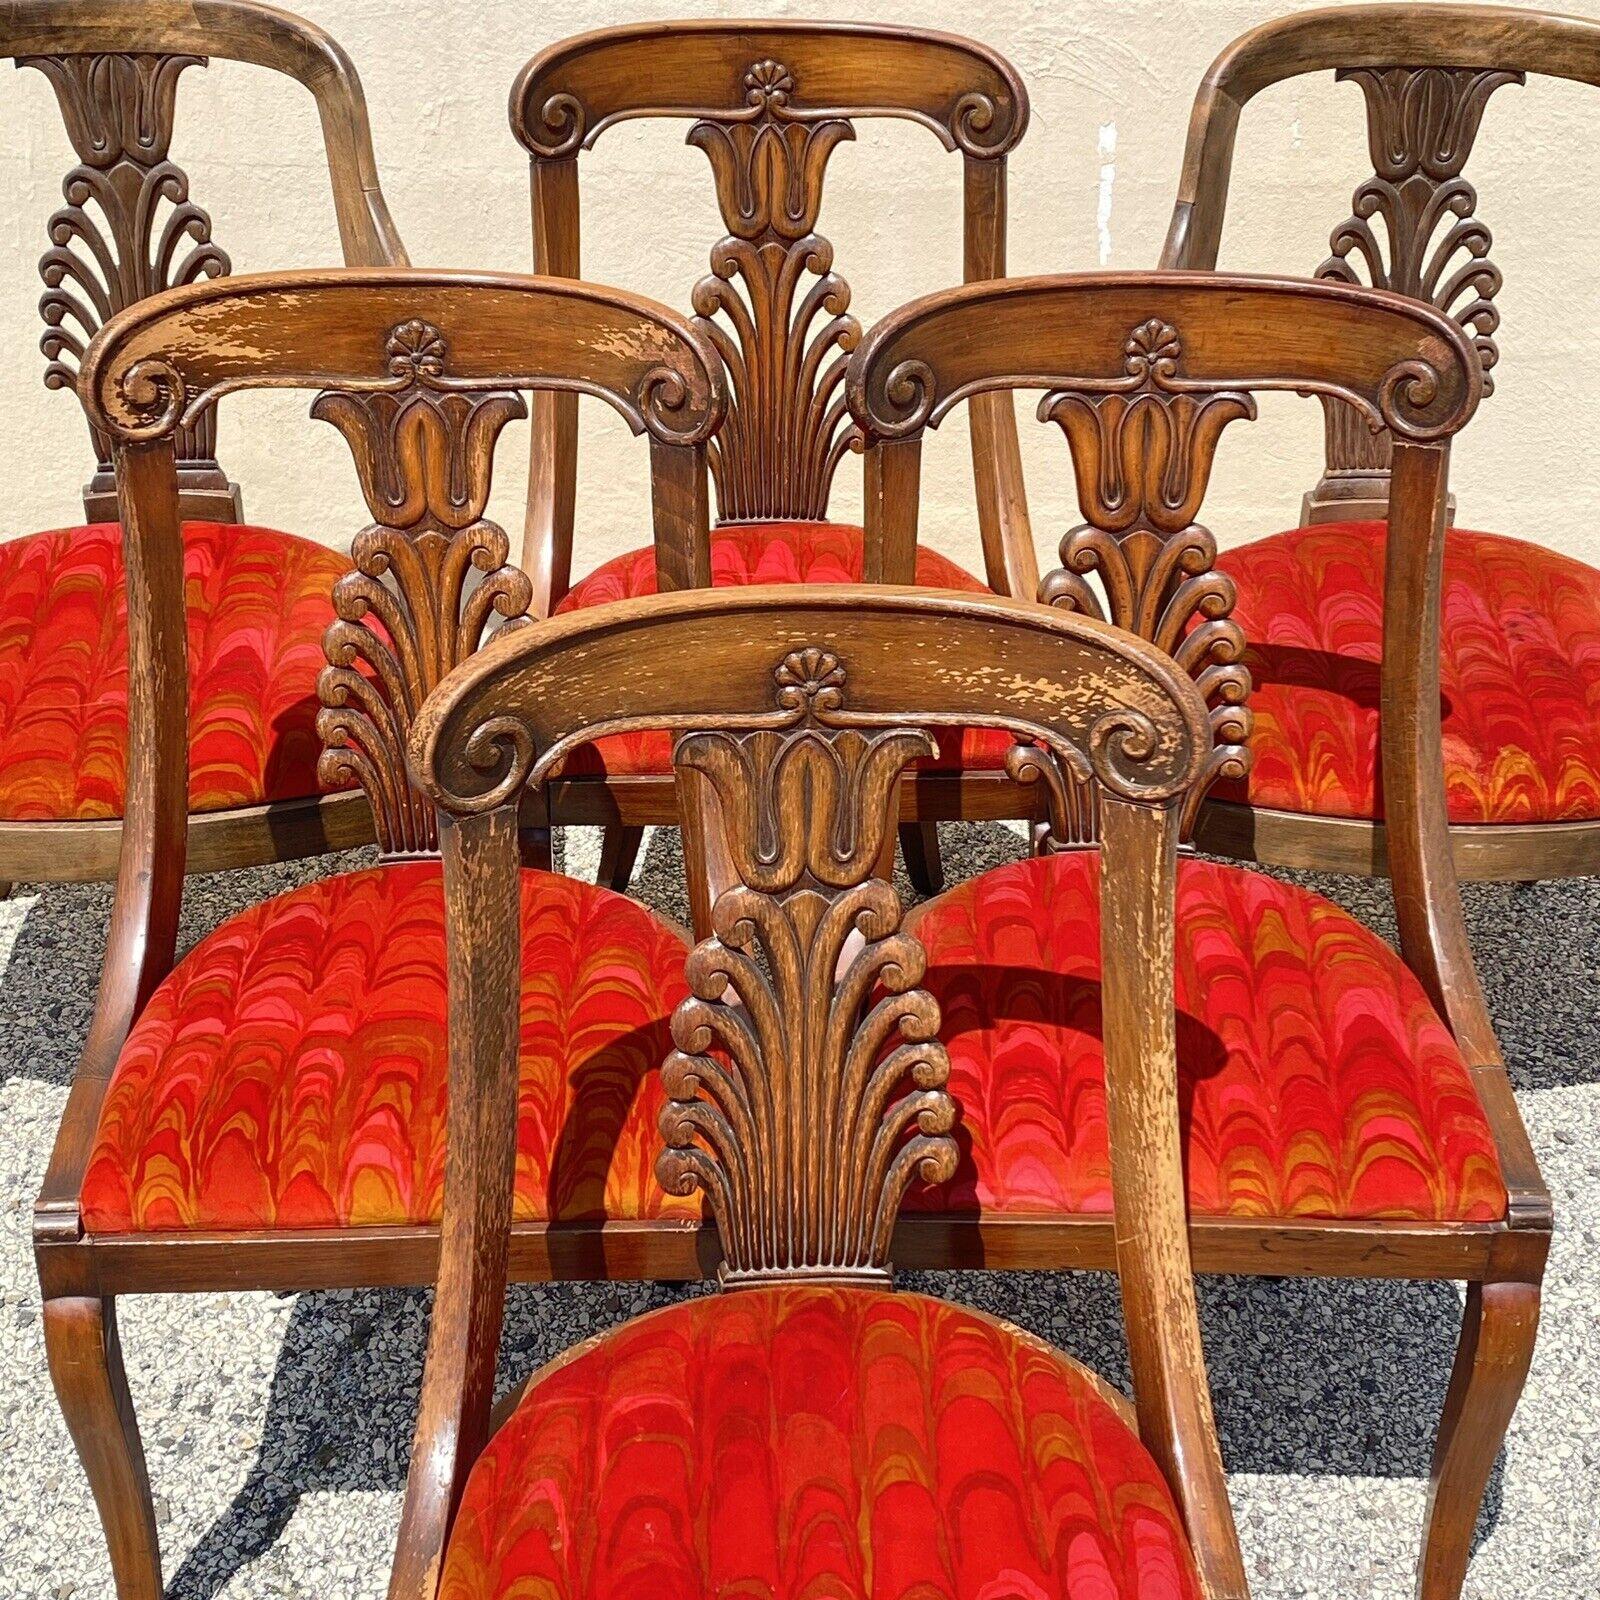 Vintage Regency / Neoklassischen Stil Plume geschnitzt Nussbaum Säbelbein Esszimmerstühle - Set von 6. Armstühle haben leicht unterschiedliche Rahmen und Schnitzereien als die Seite Stühle und eine andere Oberfläche (siehe alle Fotos für Beispiele).